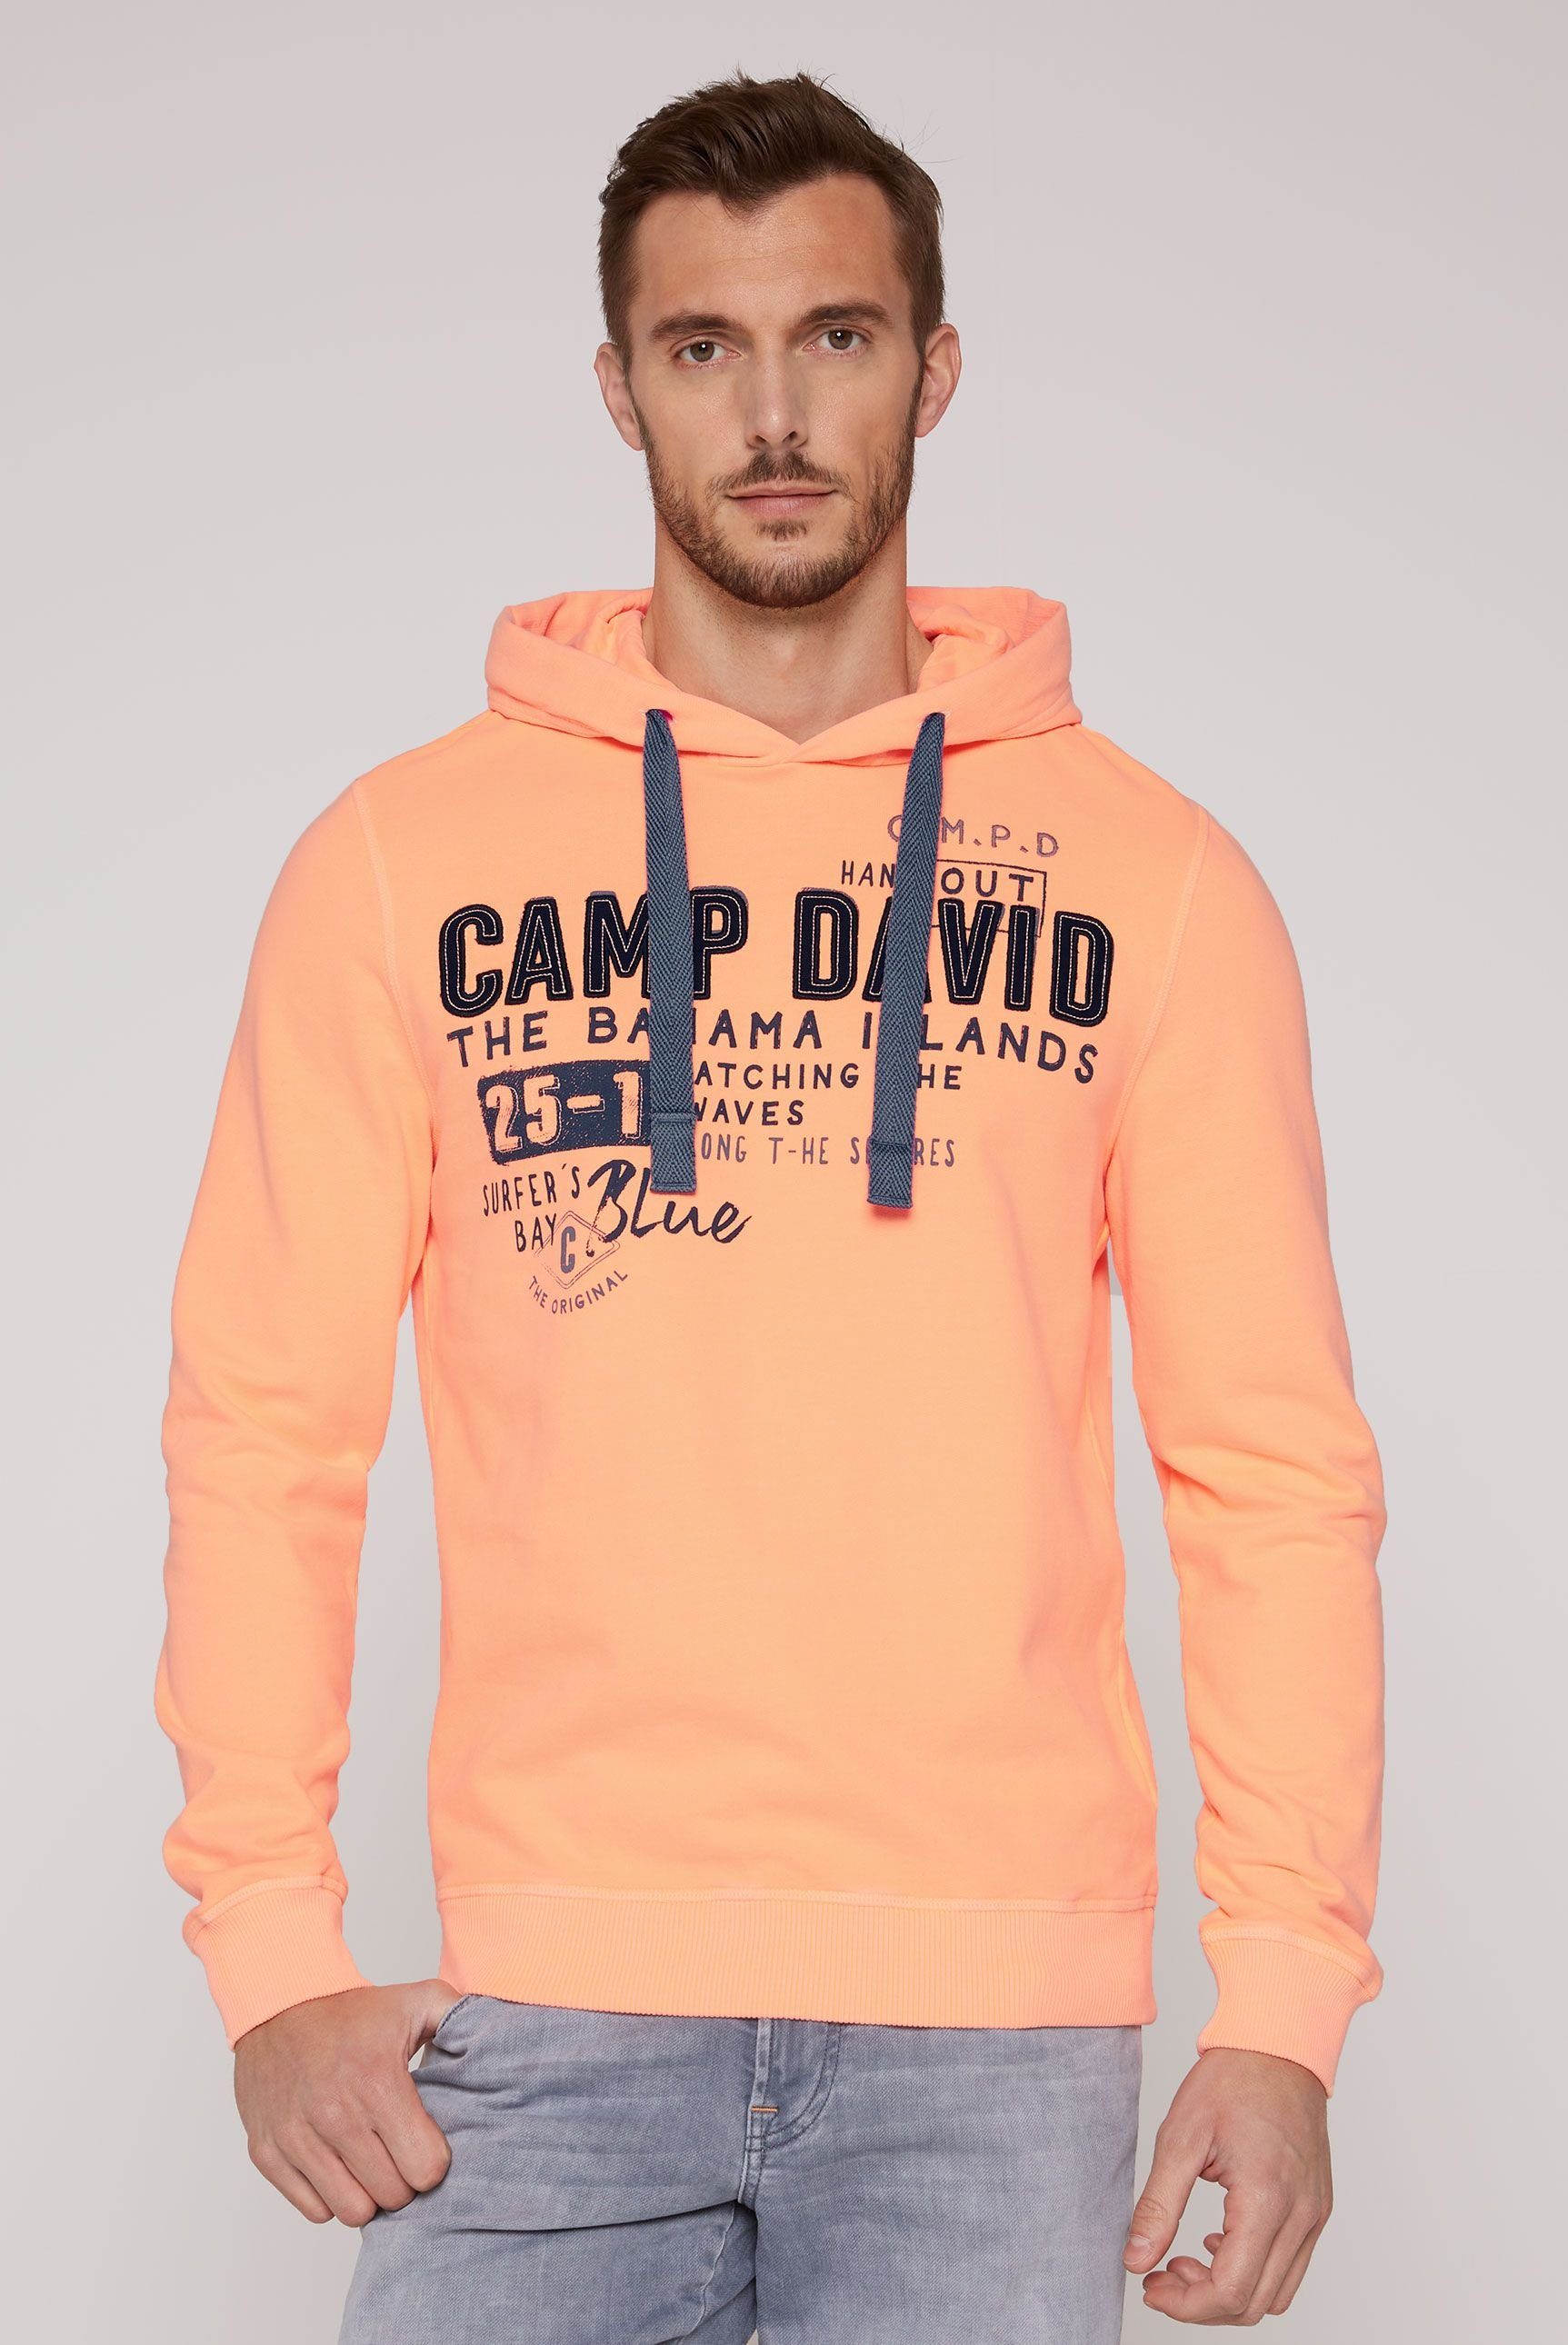 CAMP DAVID Kapuzensweatshirt mit Schriftzügen